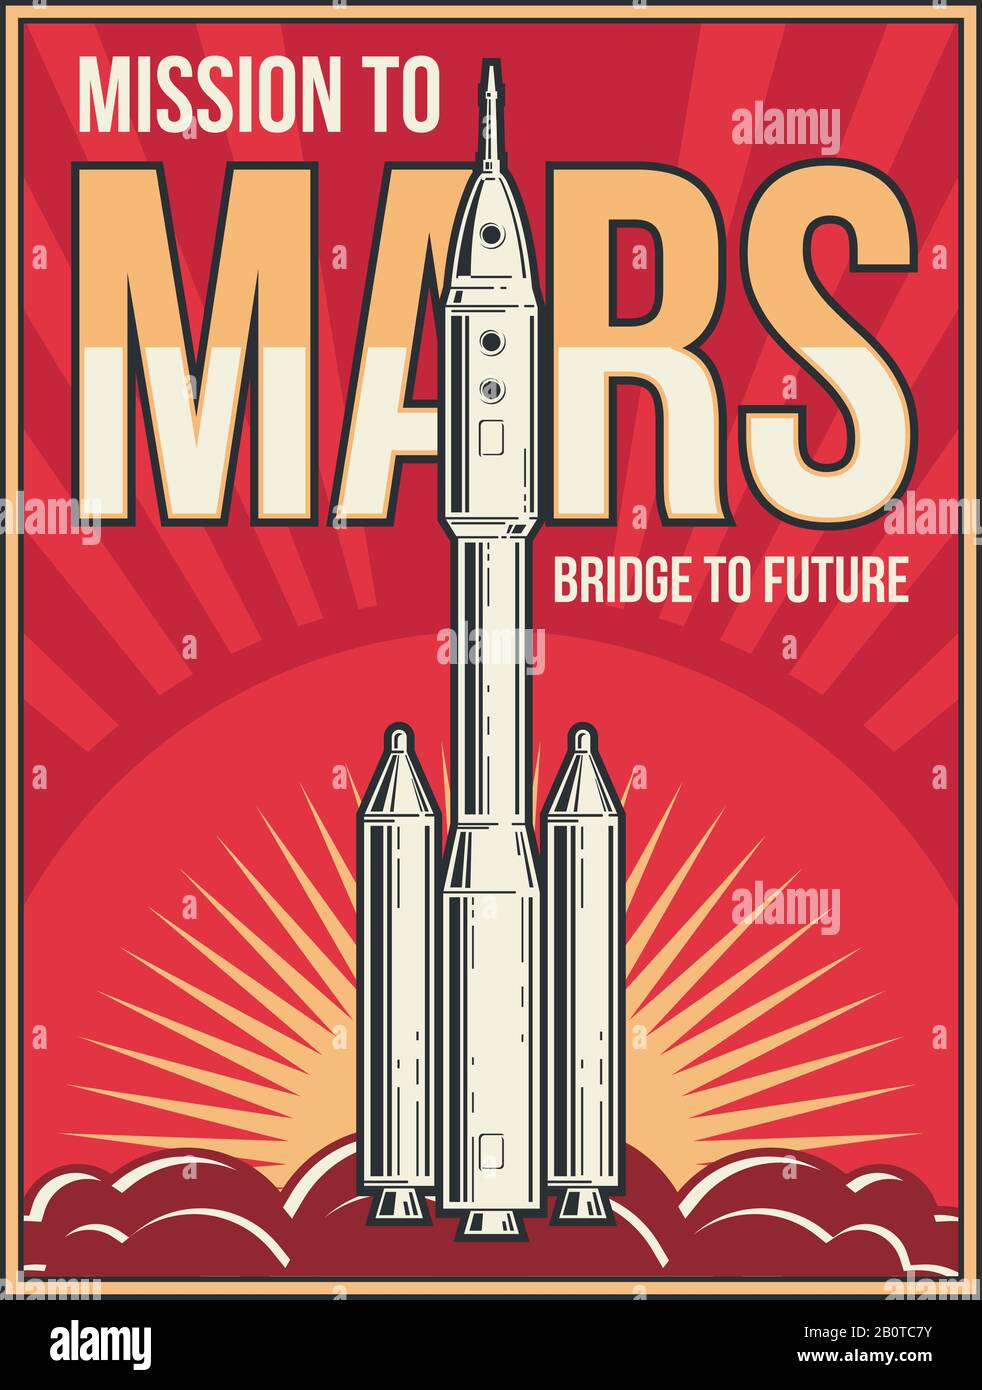 Weltraum-Reise zum Mars-Hintergrund. Universum Adventure Projekt Vector Vintage Poster. Rakete zum mars starten, Illustration des mars-mission-Plakats Stock Vektor